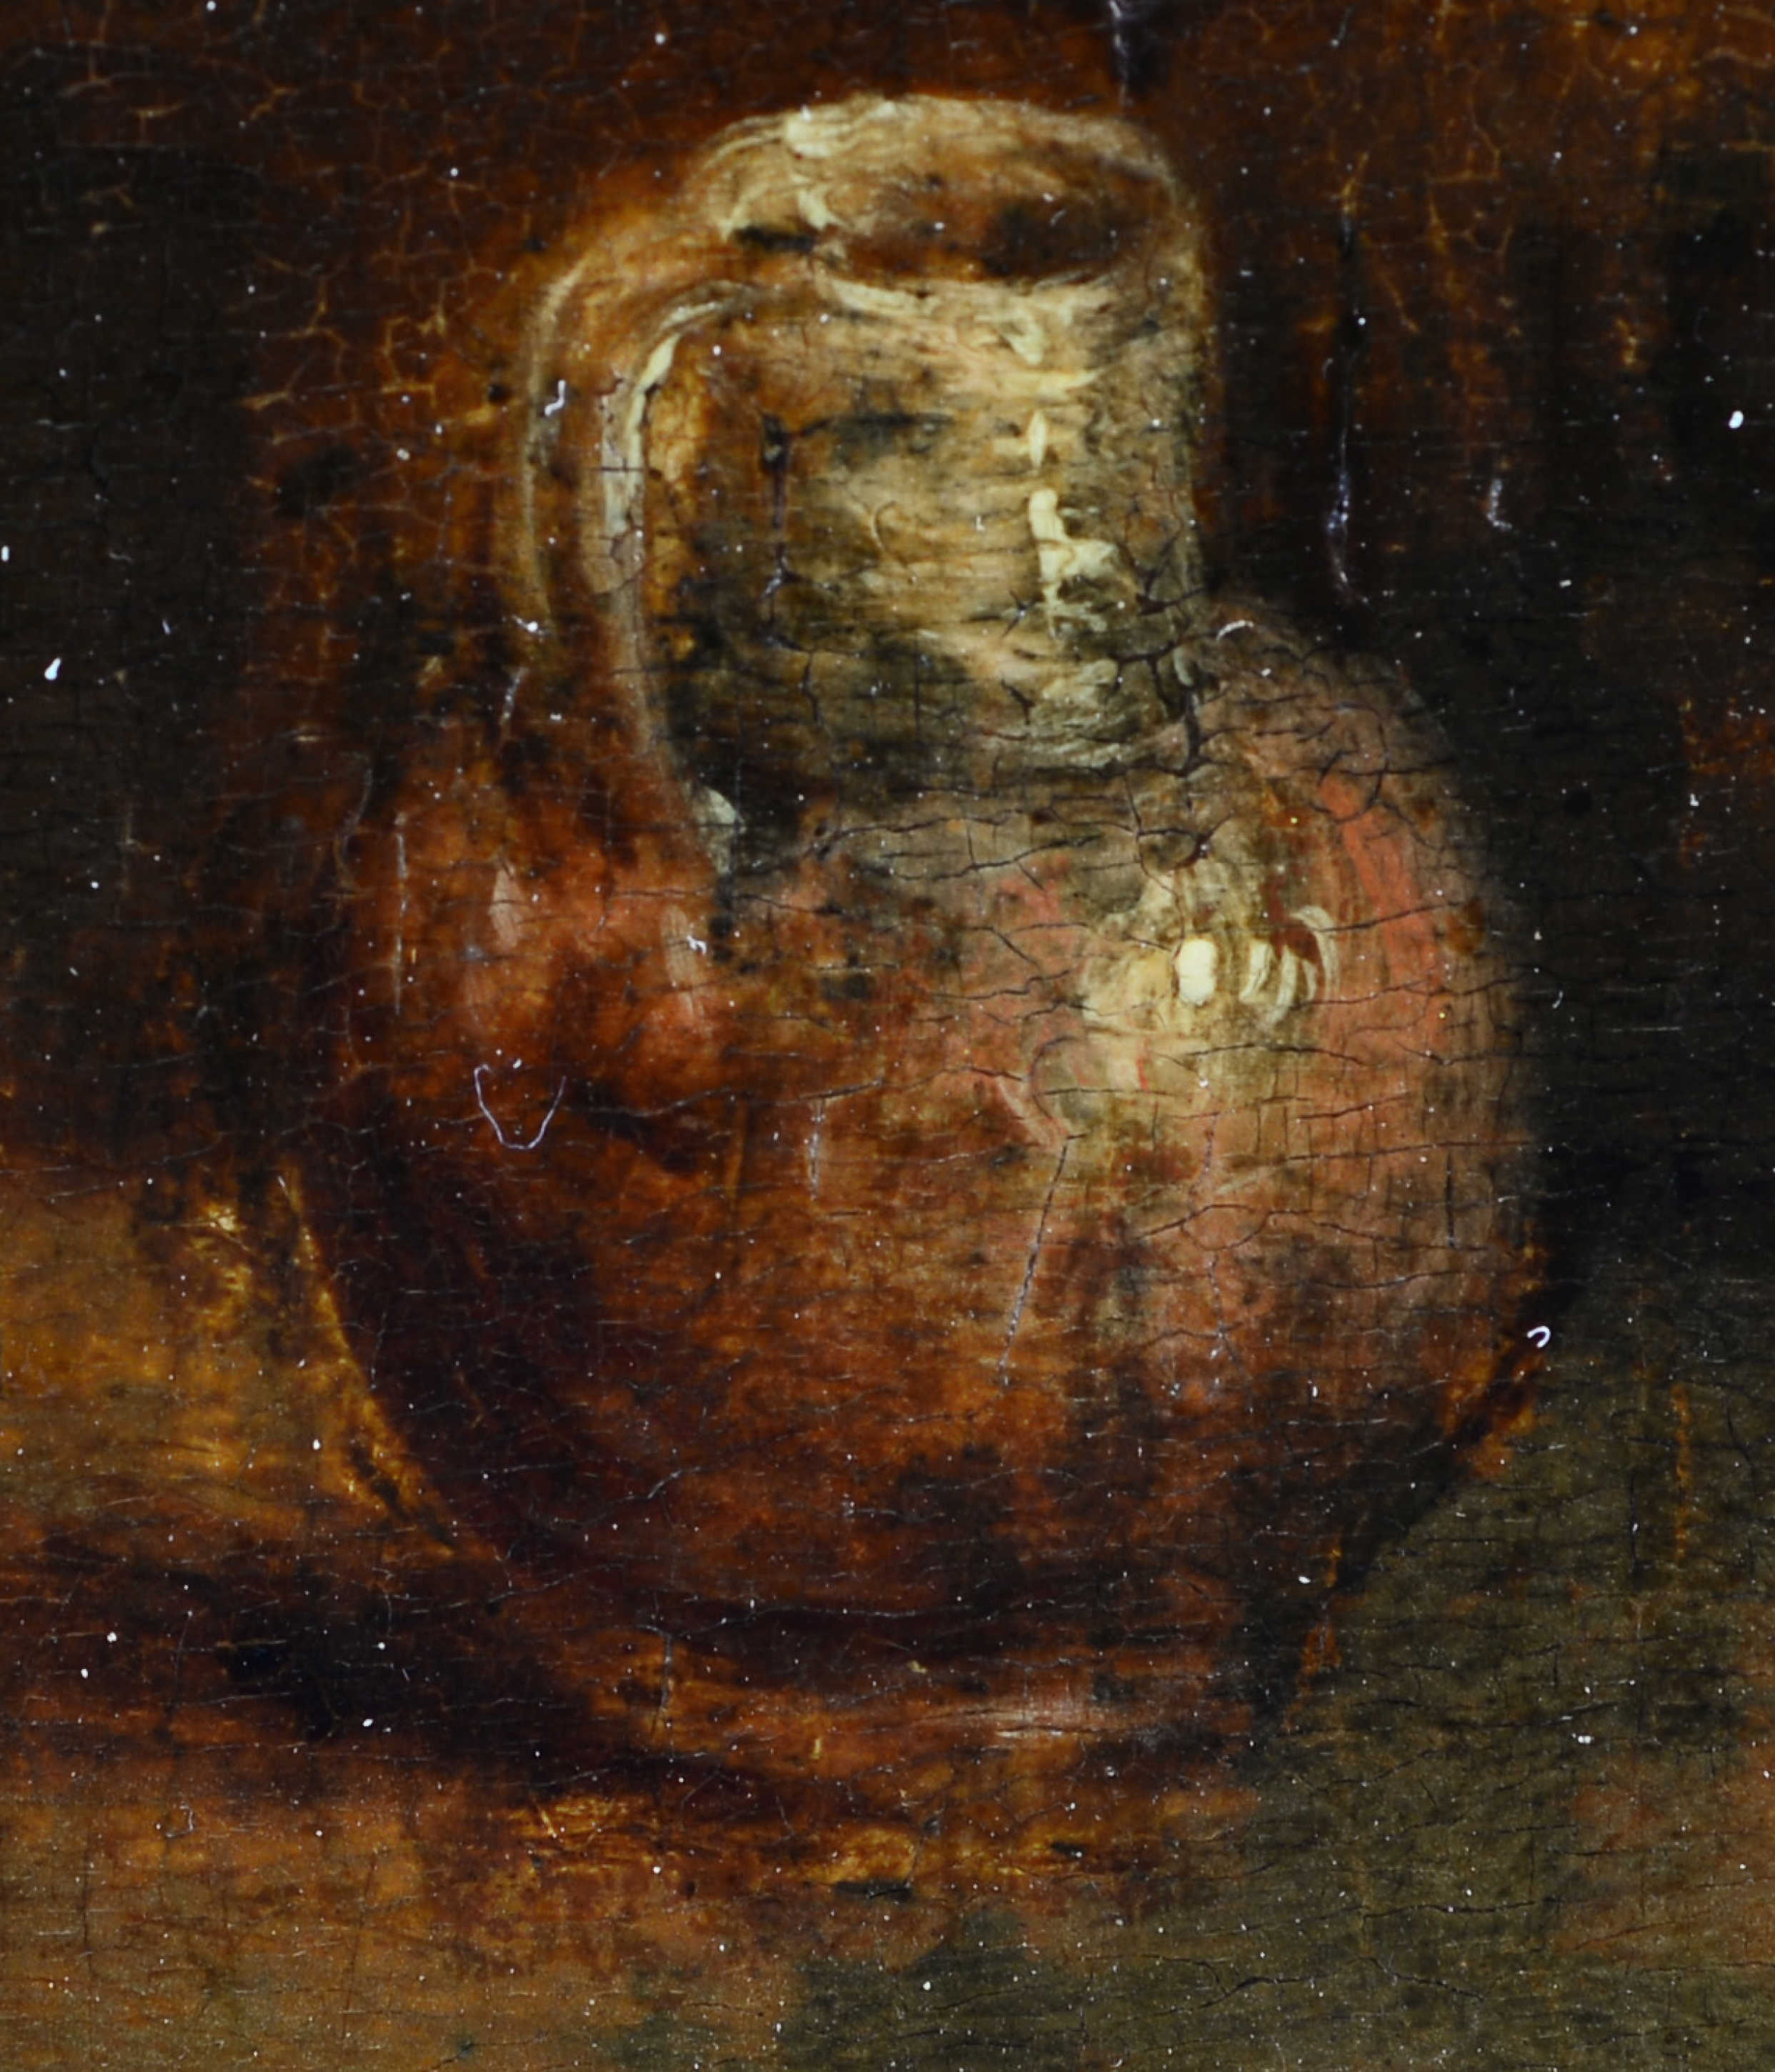 TENIERS, DAVID IIAntwerpen 1610 - 1690 BrüsselKopiePfeifenraucher am Kaminfeuer.Öl auf Eichenholz, - Image 5 of 5